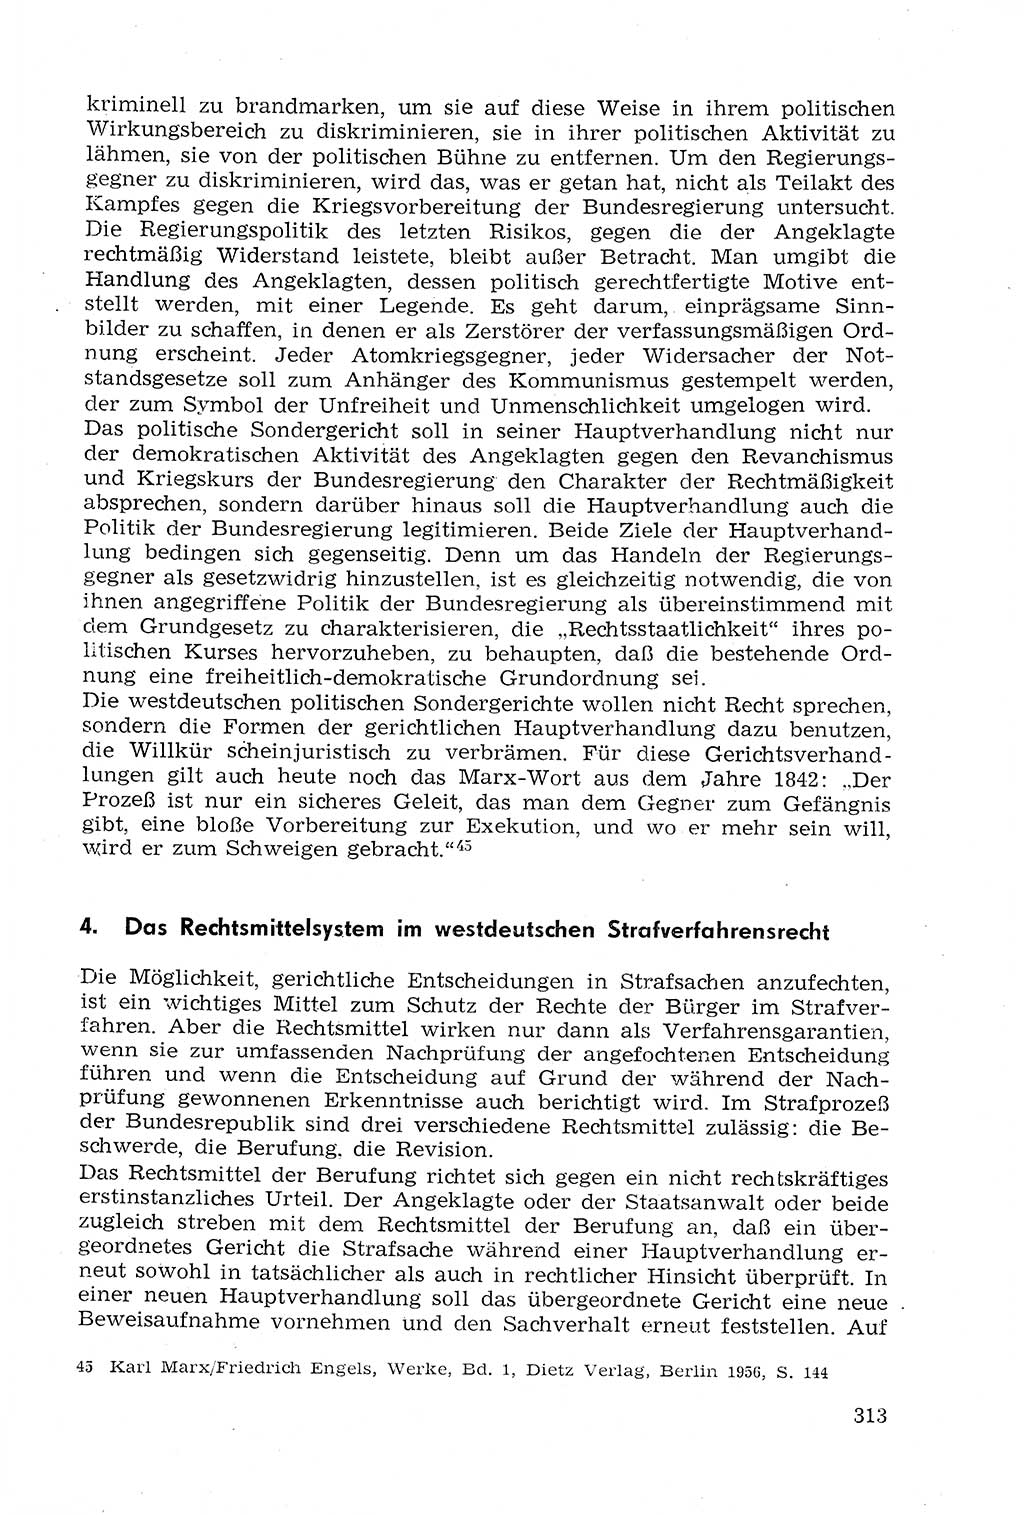 Strafprozeßrecht der DDR (Deutsche Demokratische Republik), Lehrmaterial 1969, Seite 313 (Strafprozeßr. DDR Lehrmat. 1969, S. 313)